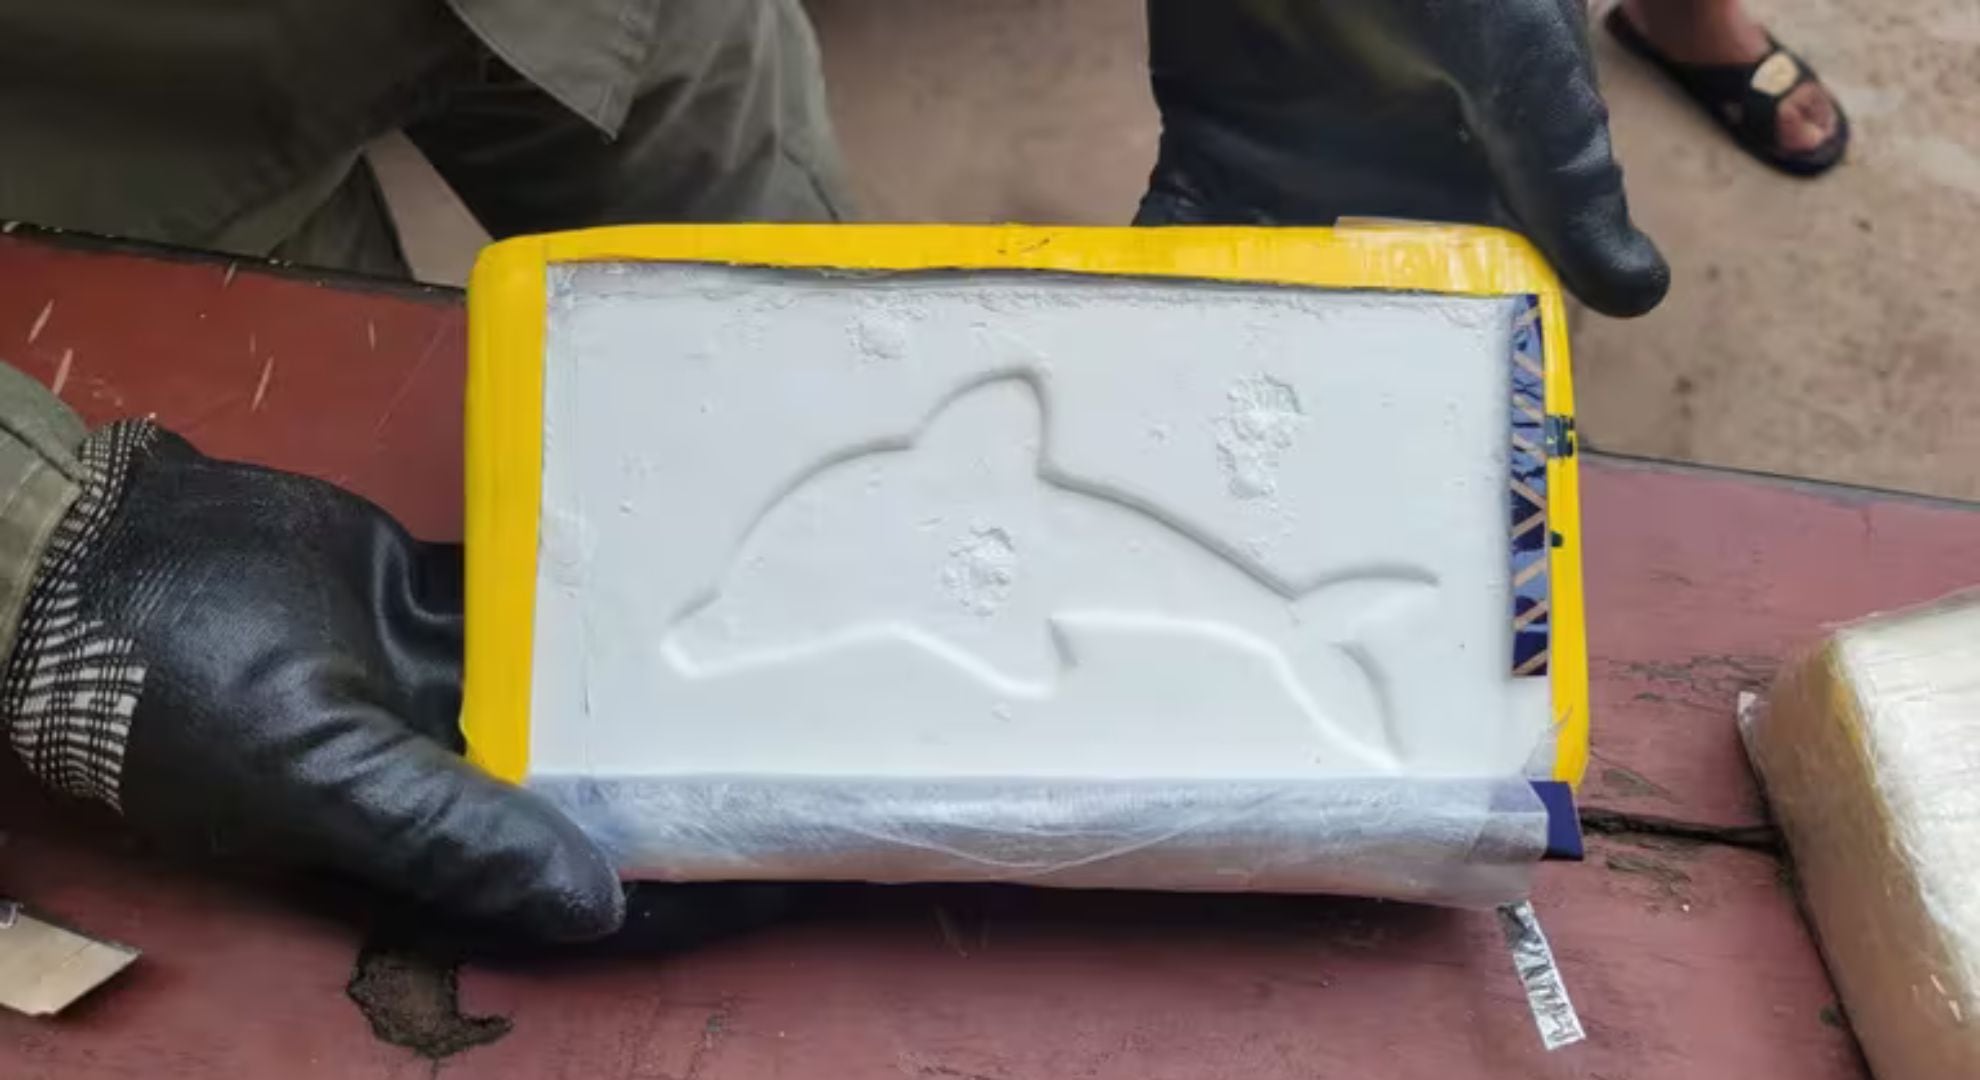 cocaína ladrillo cinta amarilla con el sello del delfín